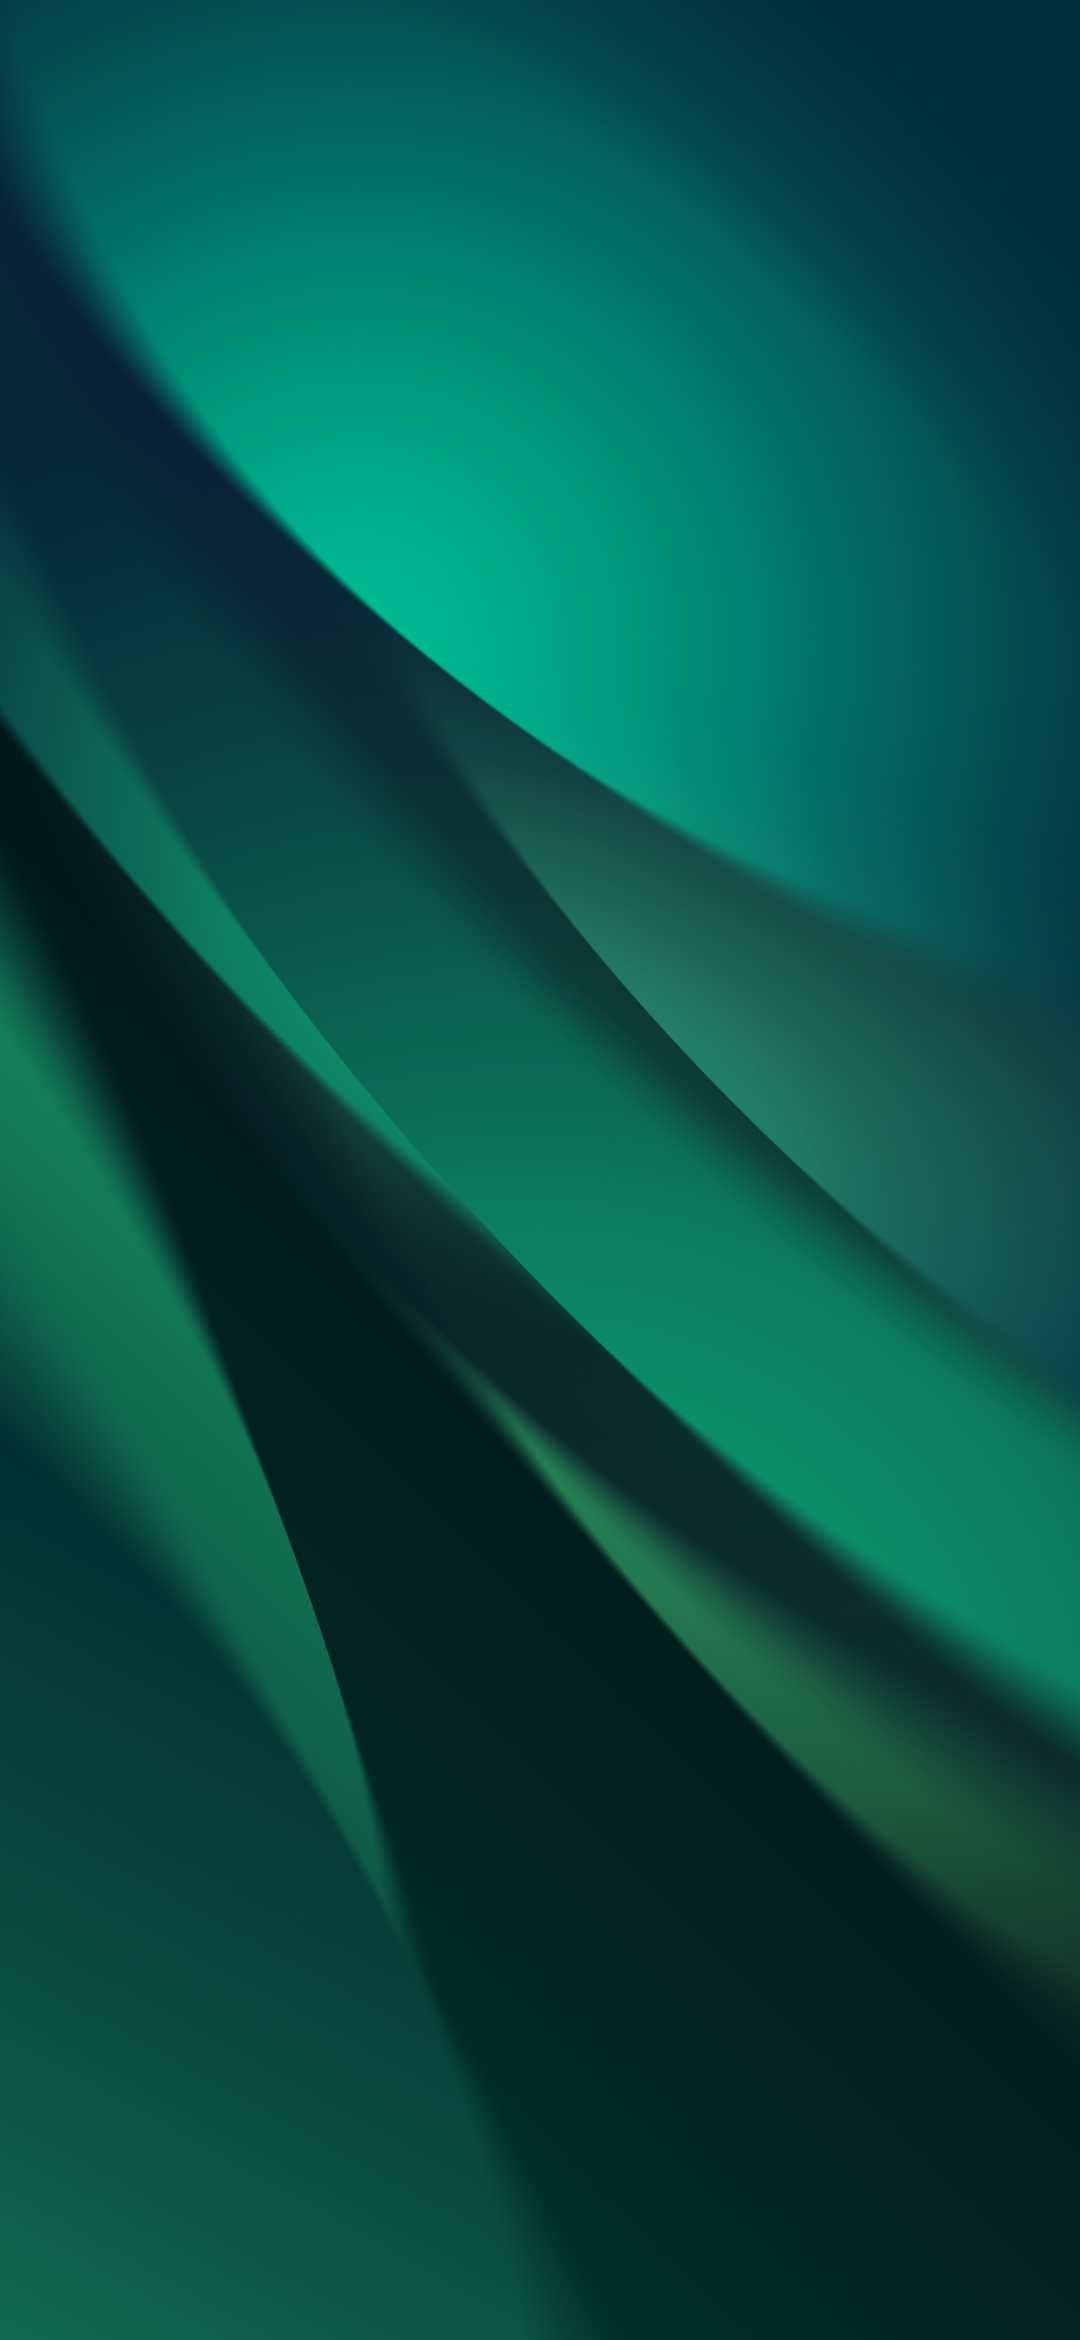 スタイリッシュな緑のグラデーション Google Pixel 4a Android スマホ壁紙 待ち受け スマラン